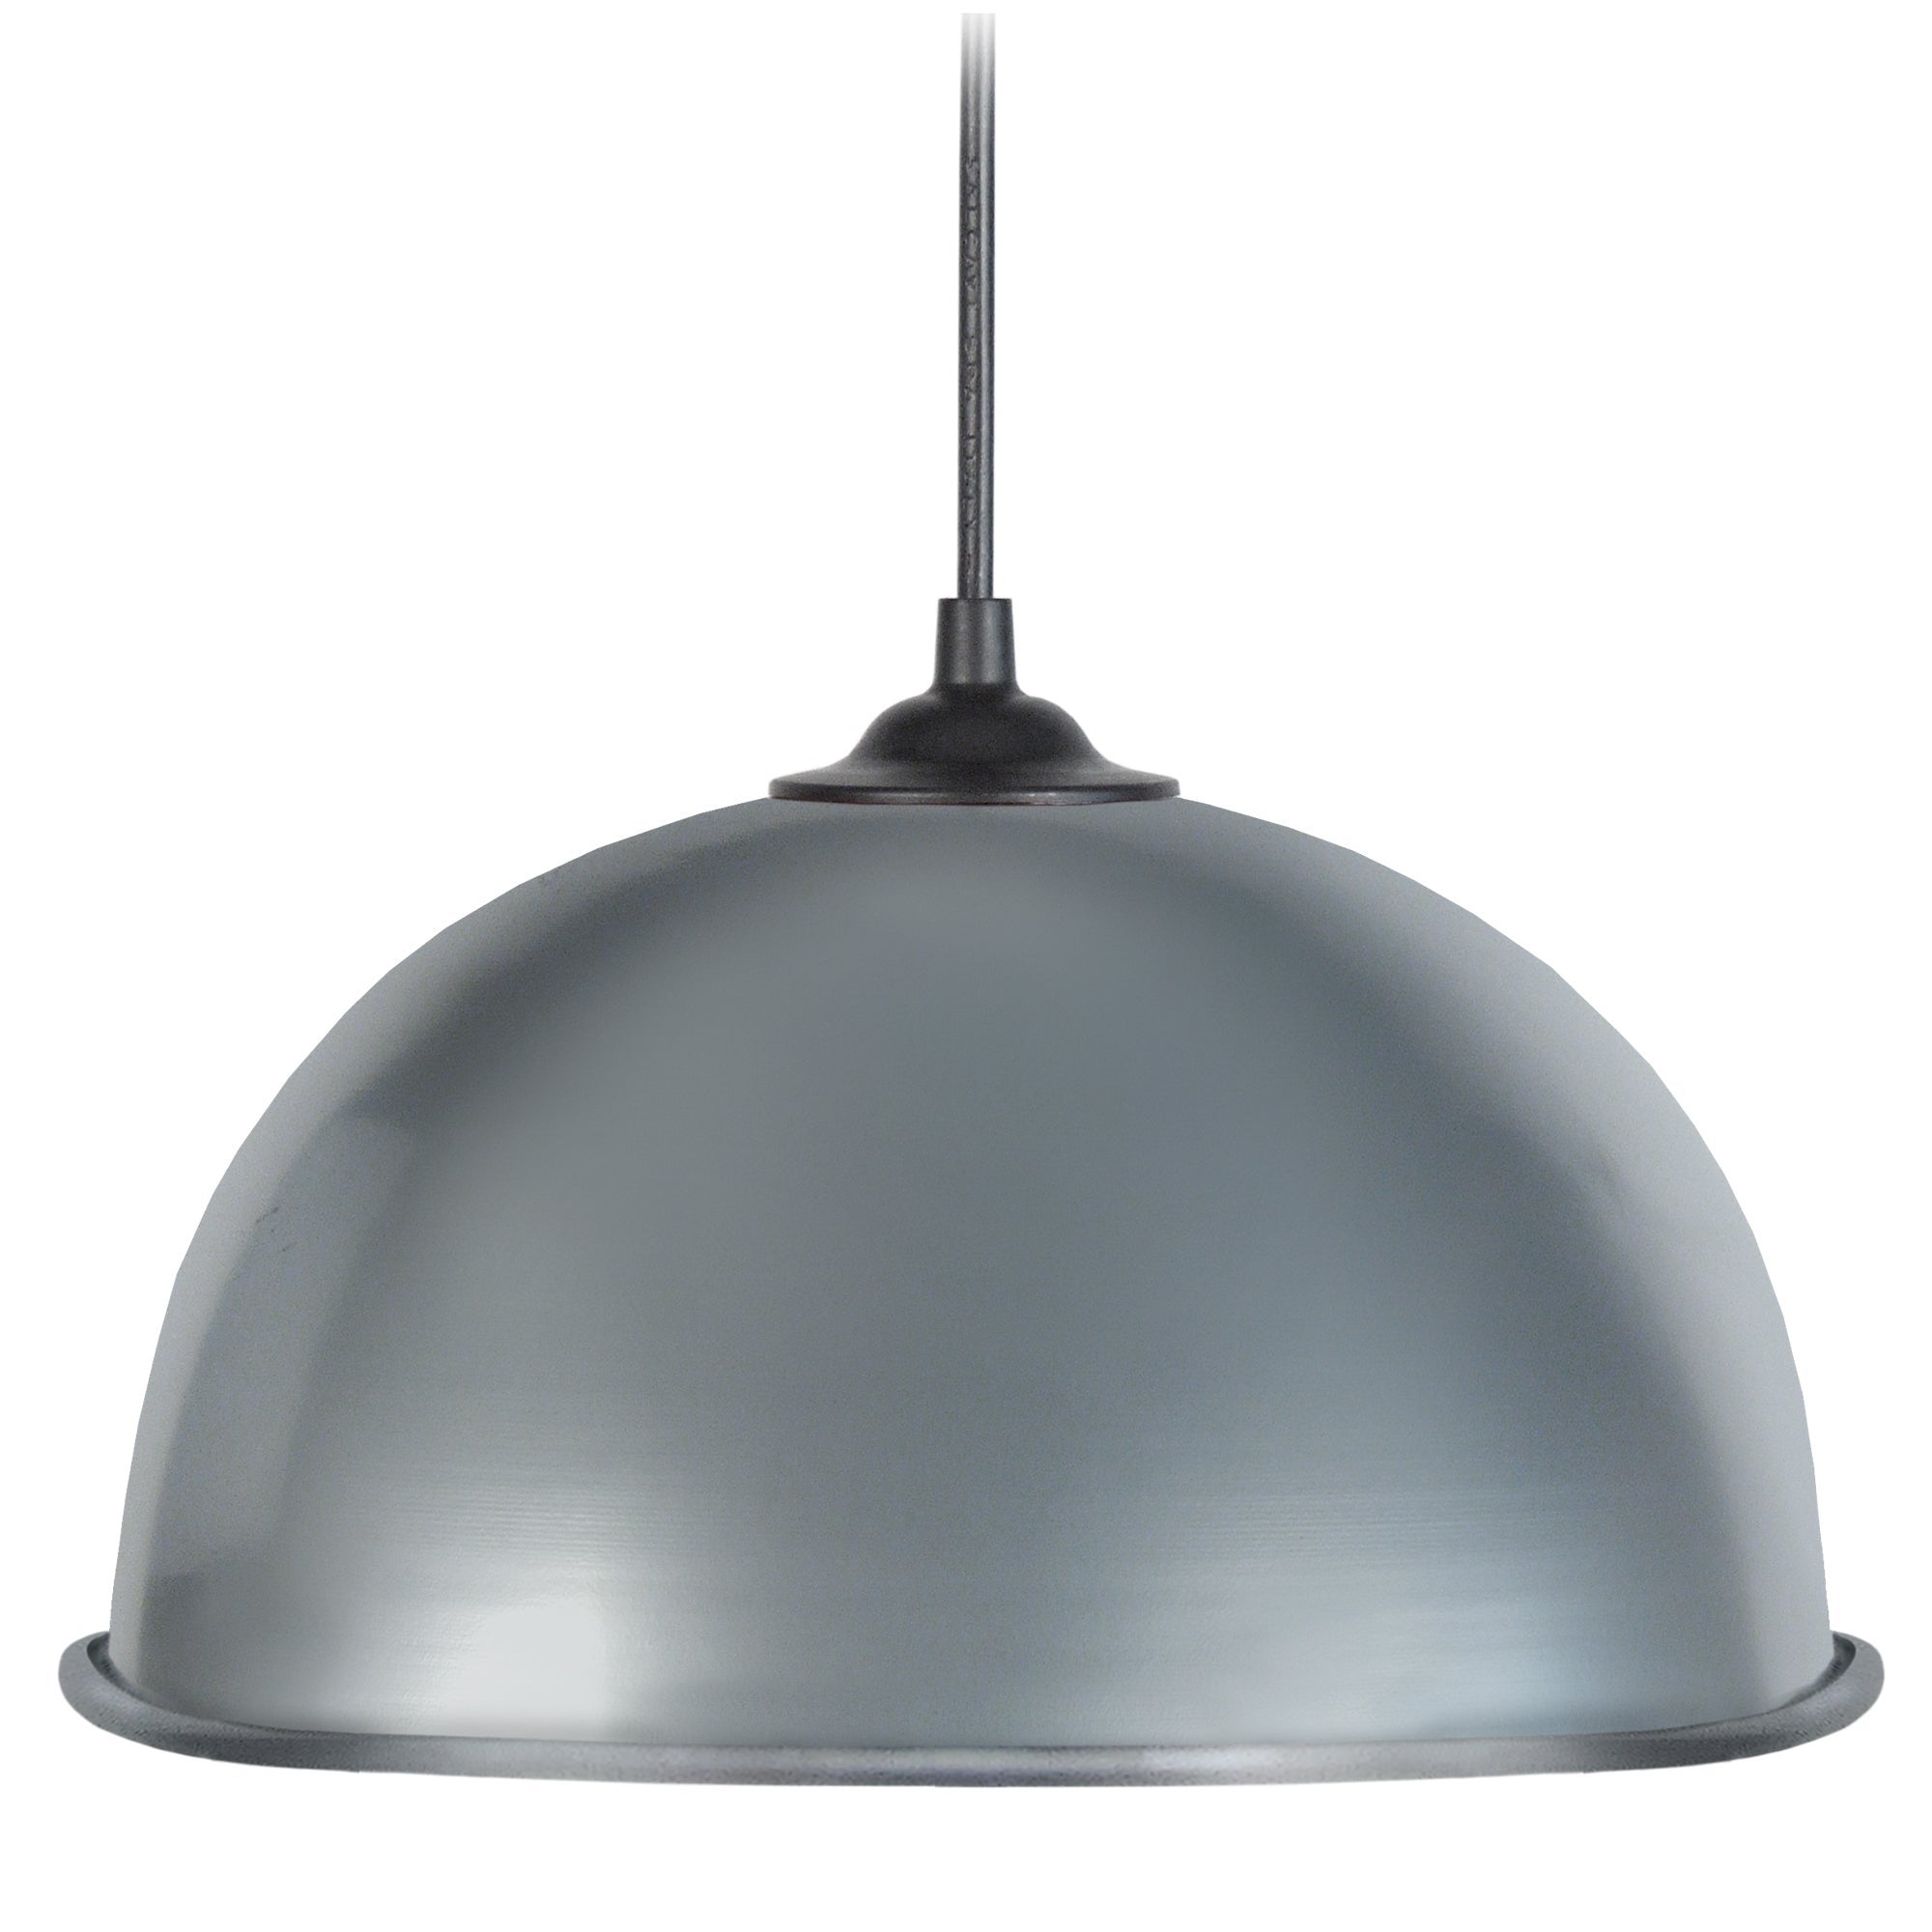 Half-ball roullé - lámpara colgante redondo metal aluminio